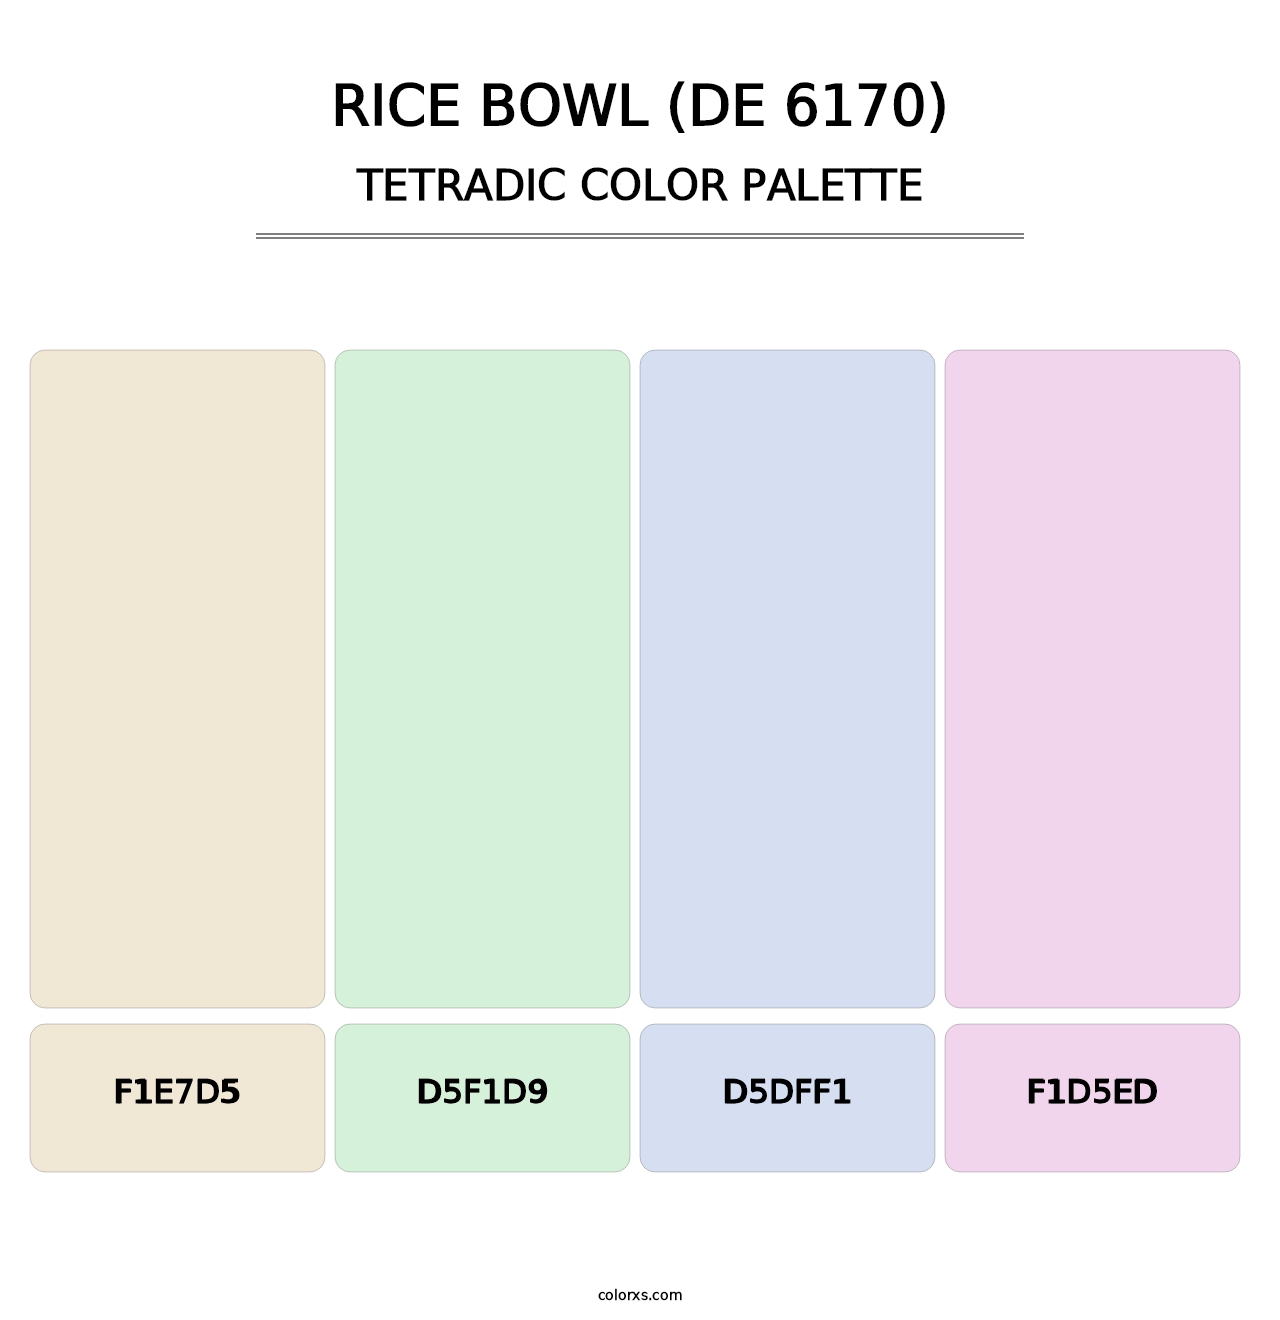 Rice Bowl (DE 6170) - Tetradic Color Palette